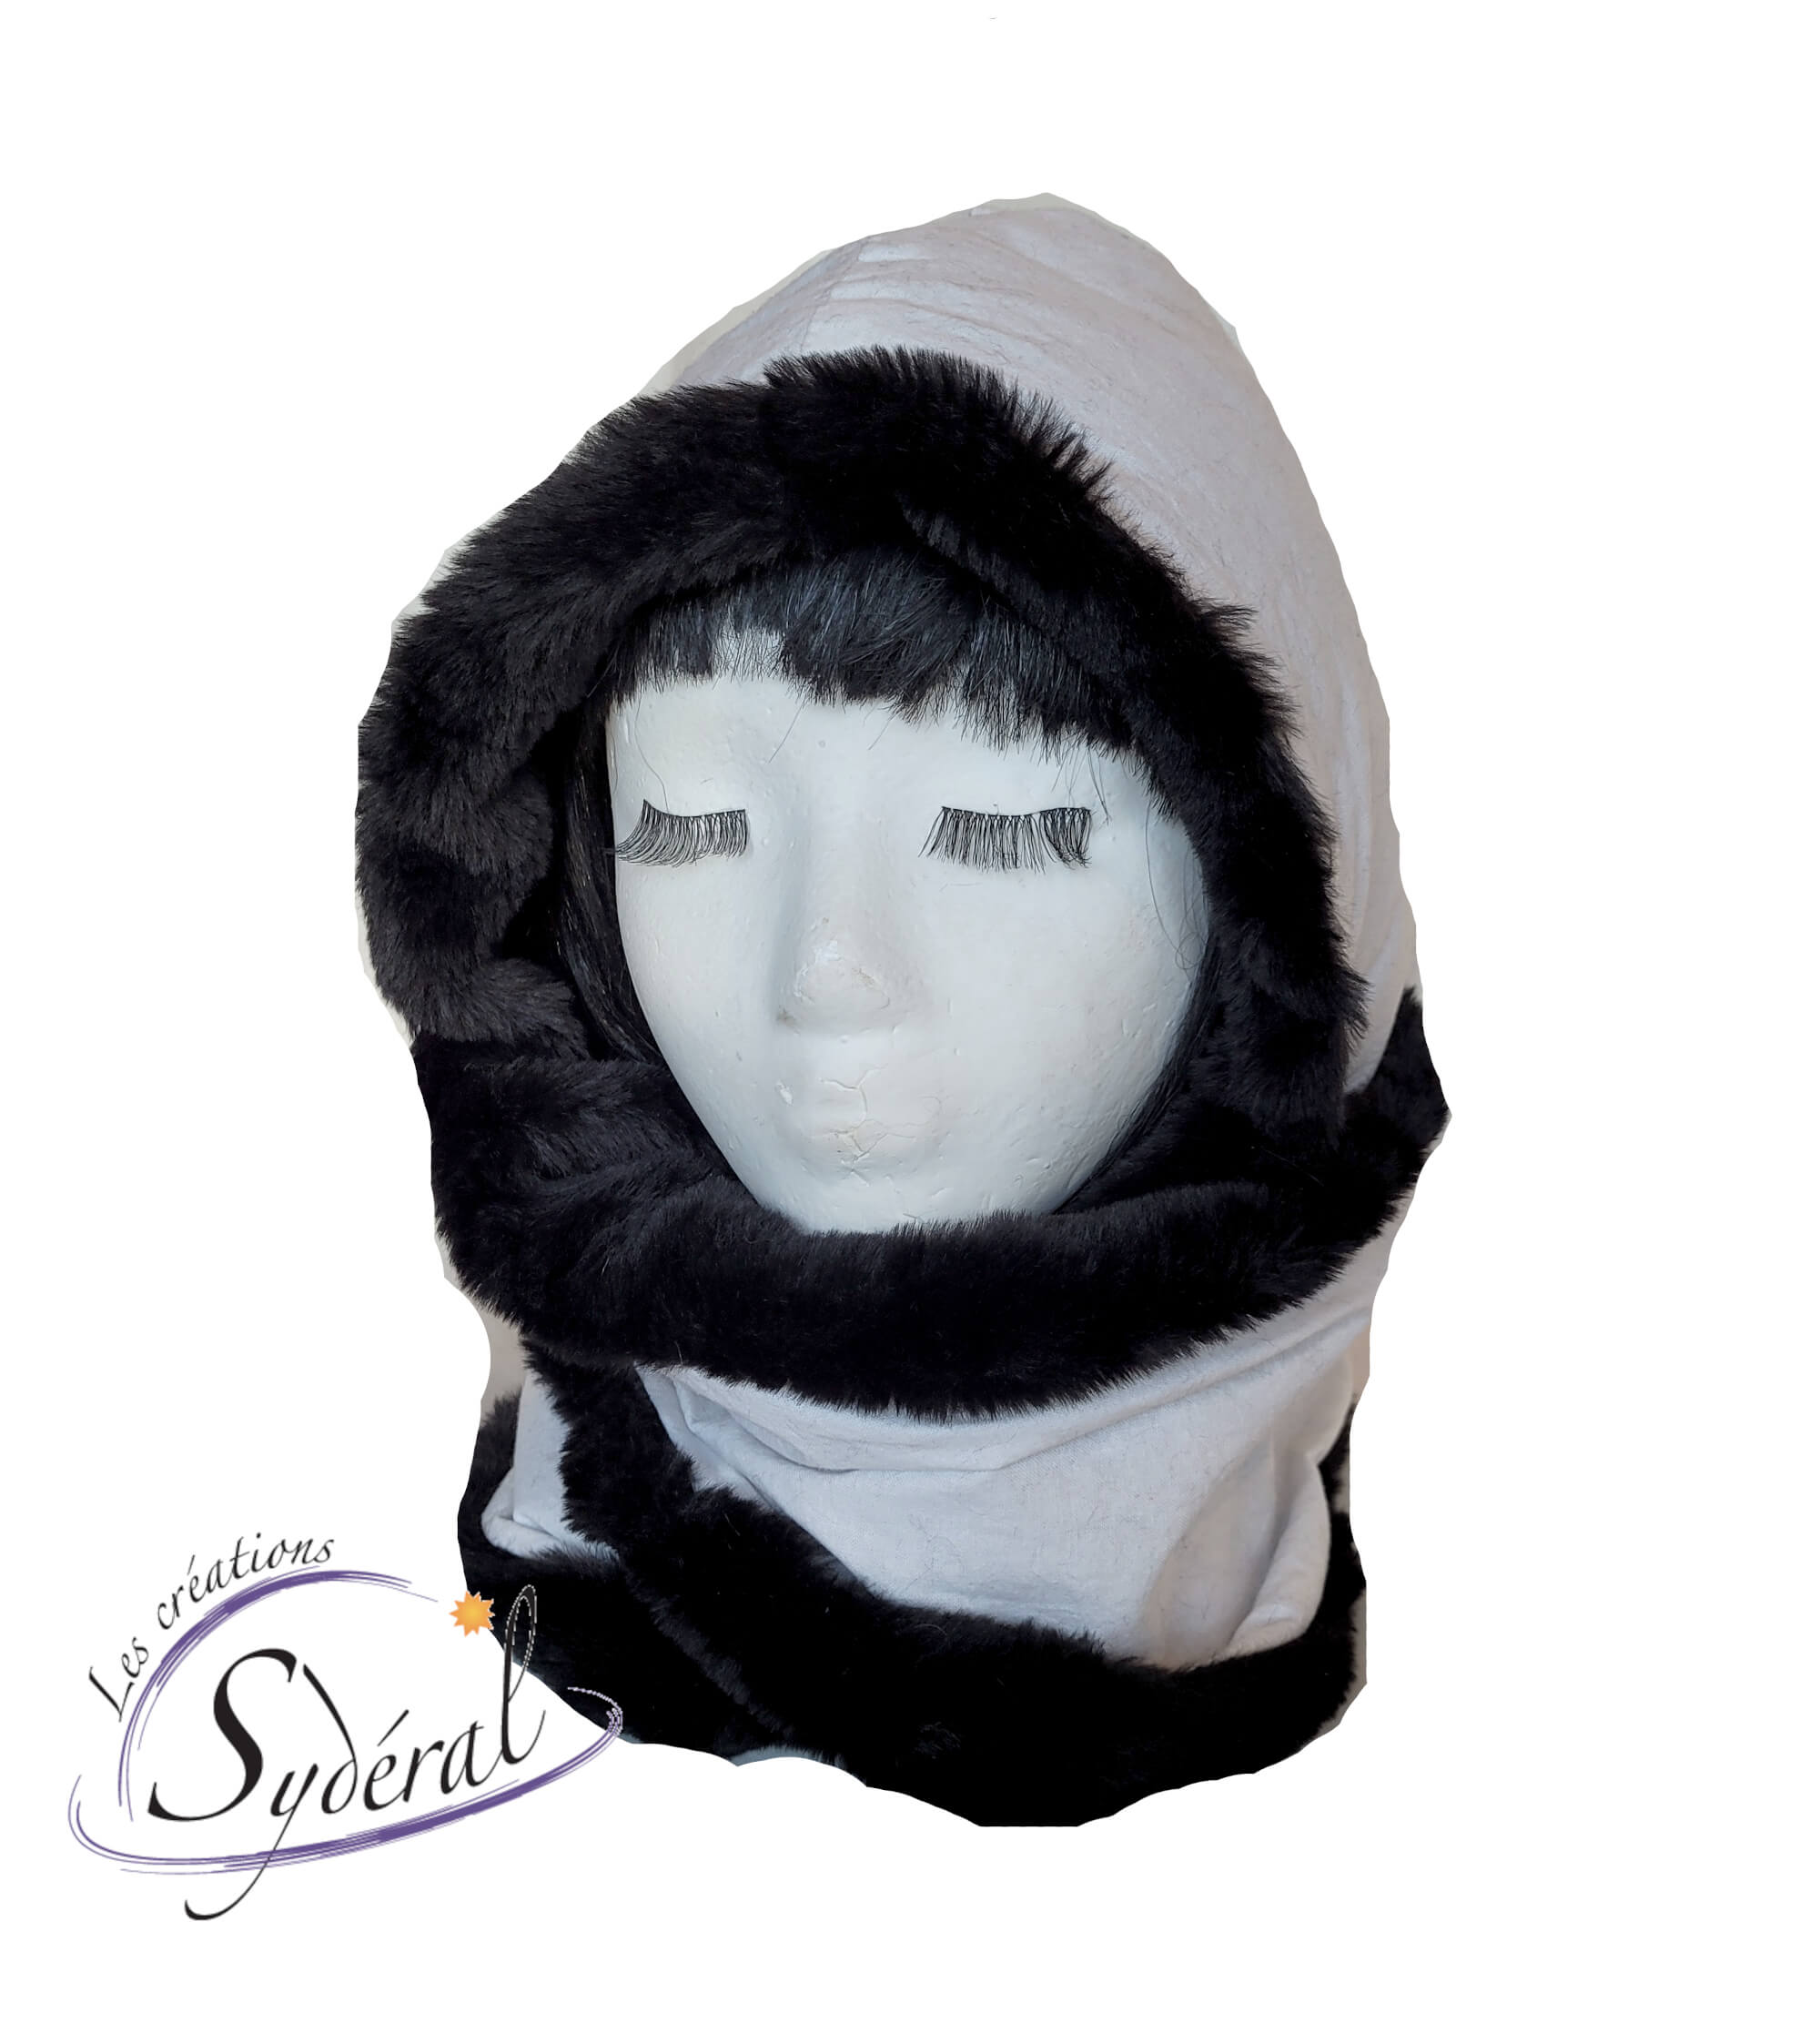 Capuchon avec foulard/cache-cou intégré en coton blanc et fourrure  synthétique noire